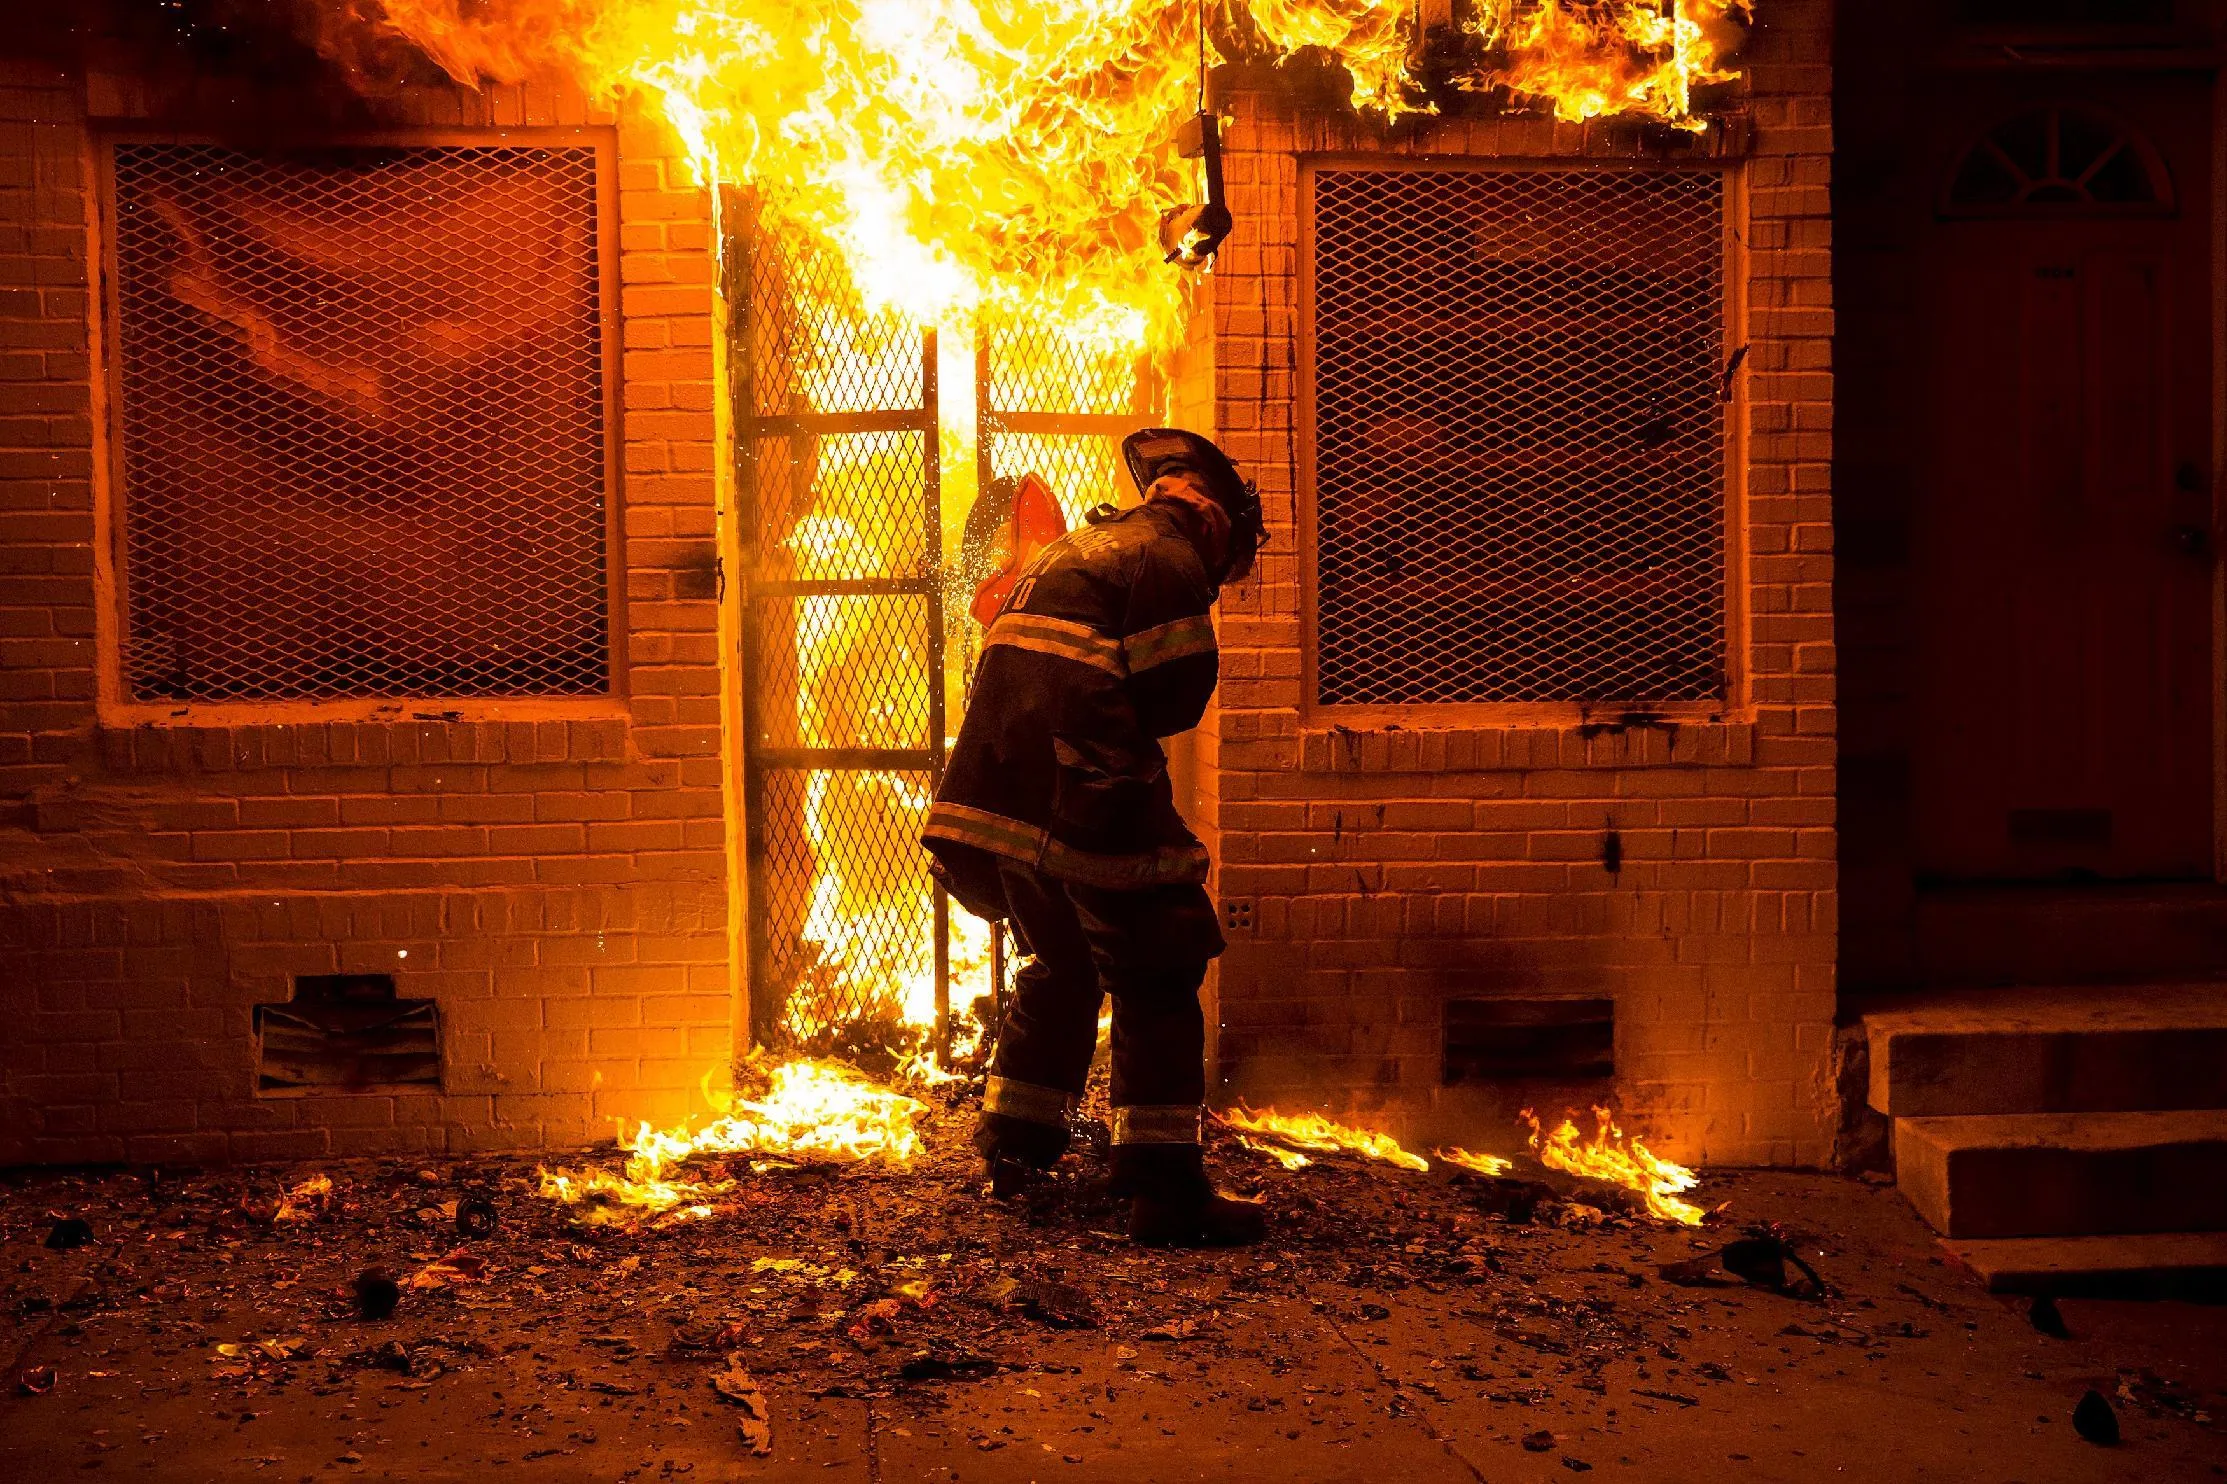 Сгорела двери. Человек в горящем окне. Пожарный заходит в горящий дом. Поджог. Поджог магазина.